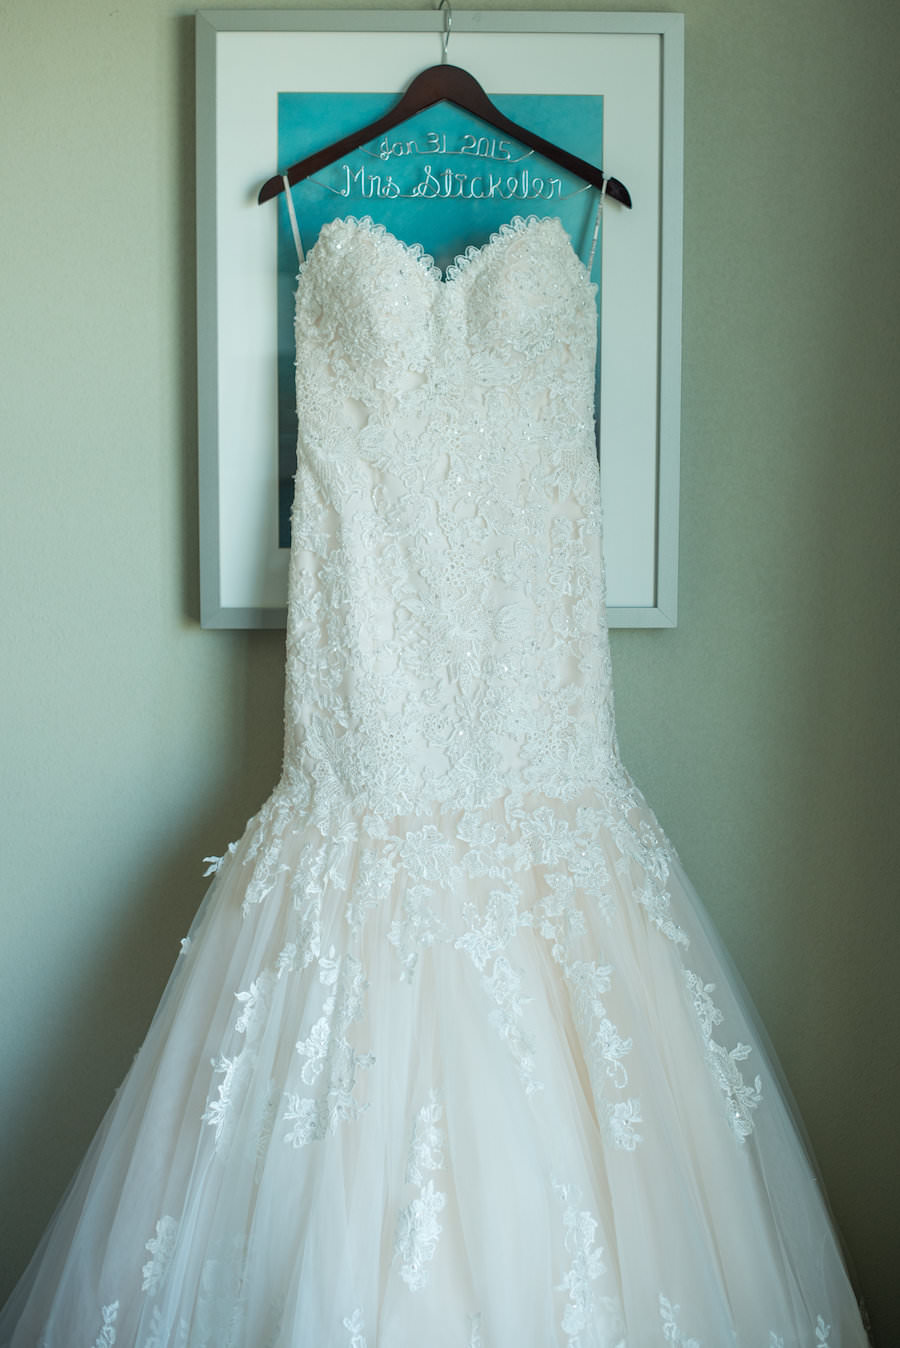 Ivory, Beaded Lace Strapless Wedding Dress on Customized Wedding Hanger